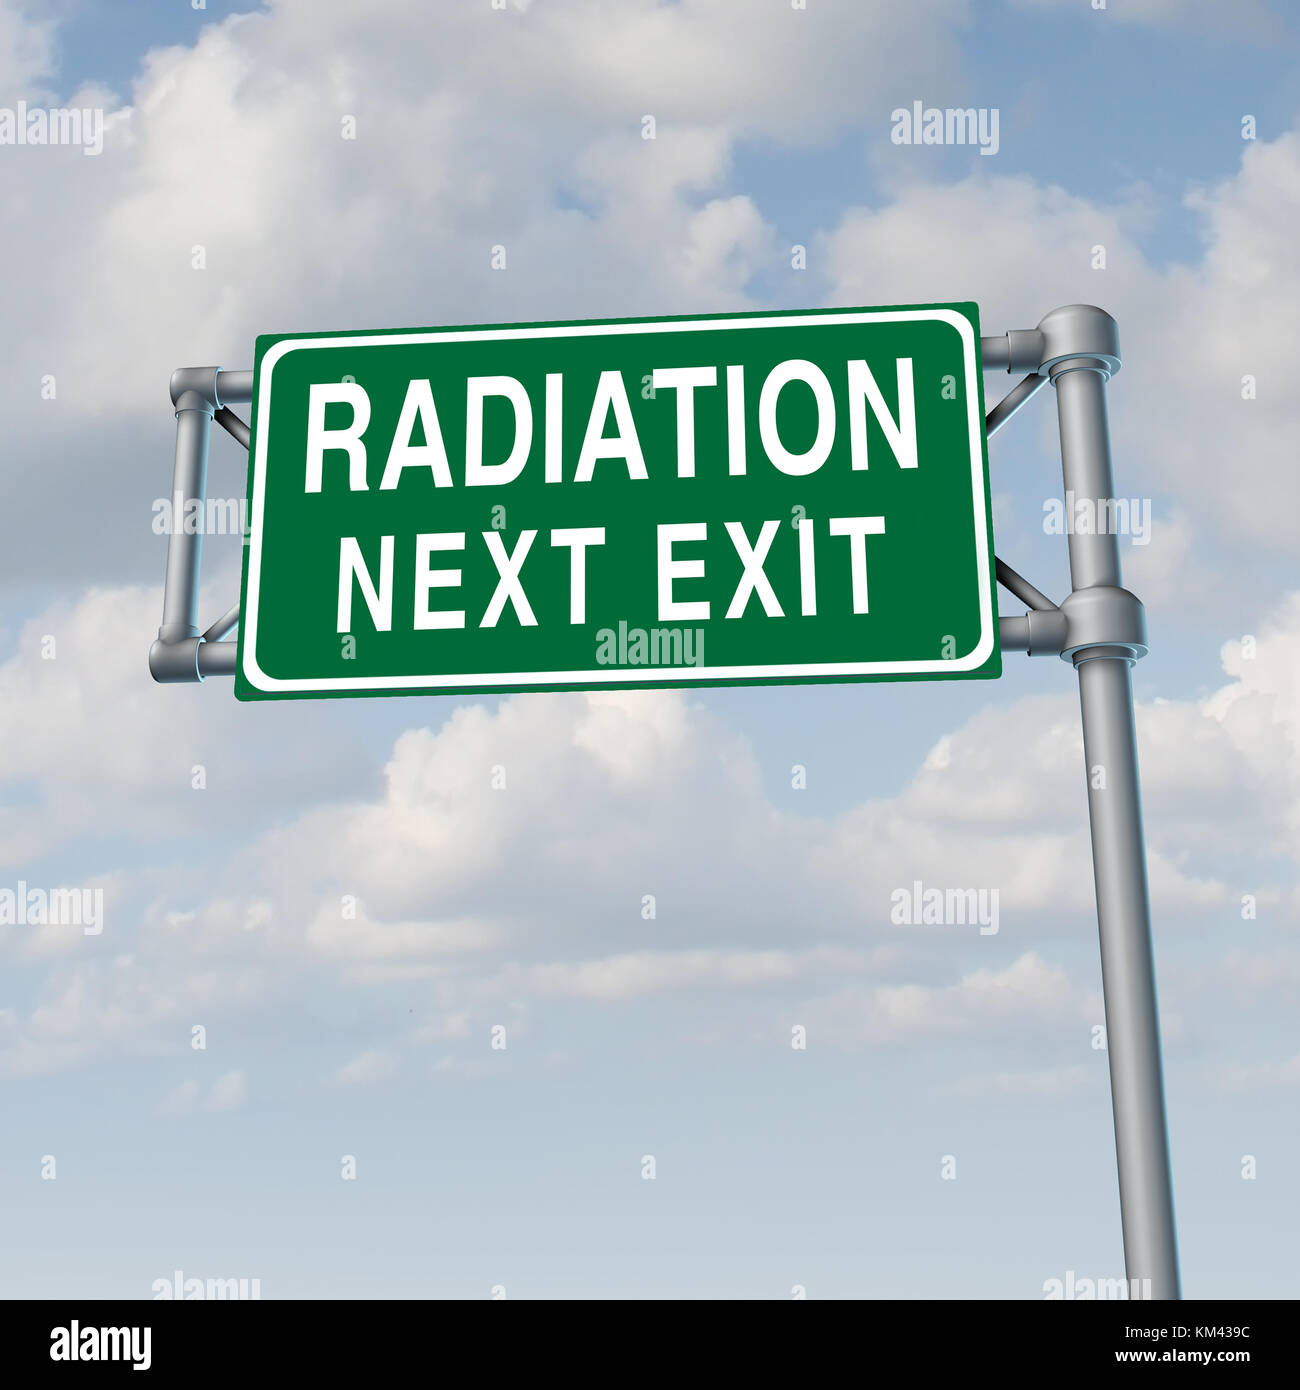 Concepto de crisis de radiación nuclear tóxico y el símbolo de alerta de fuga con elementos de ilustración 3d. Foto de stock